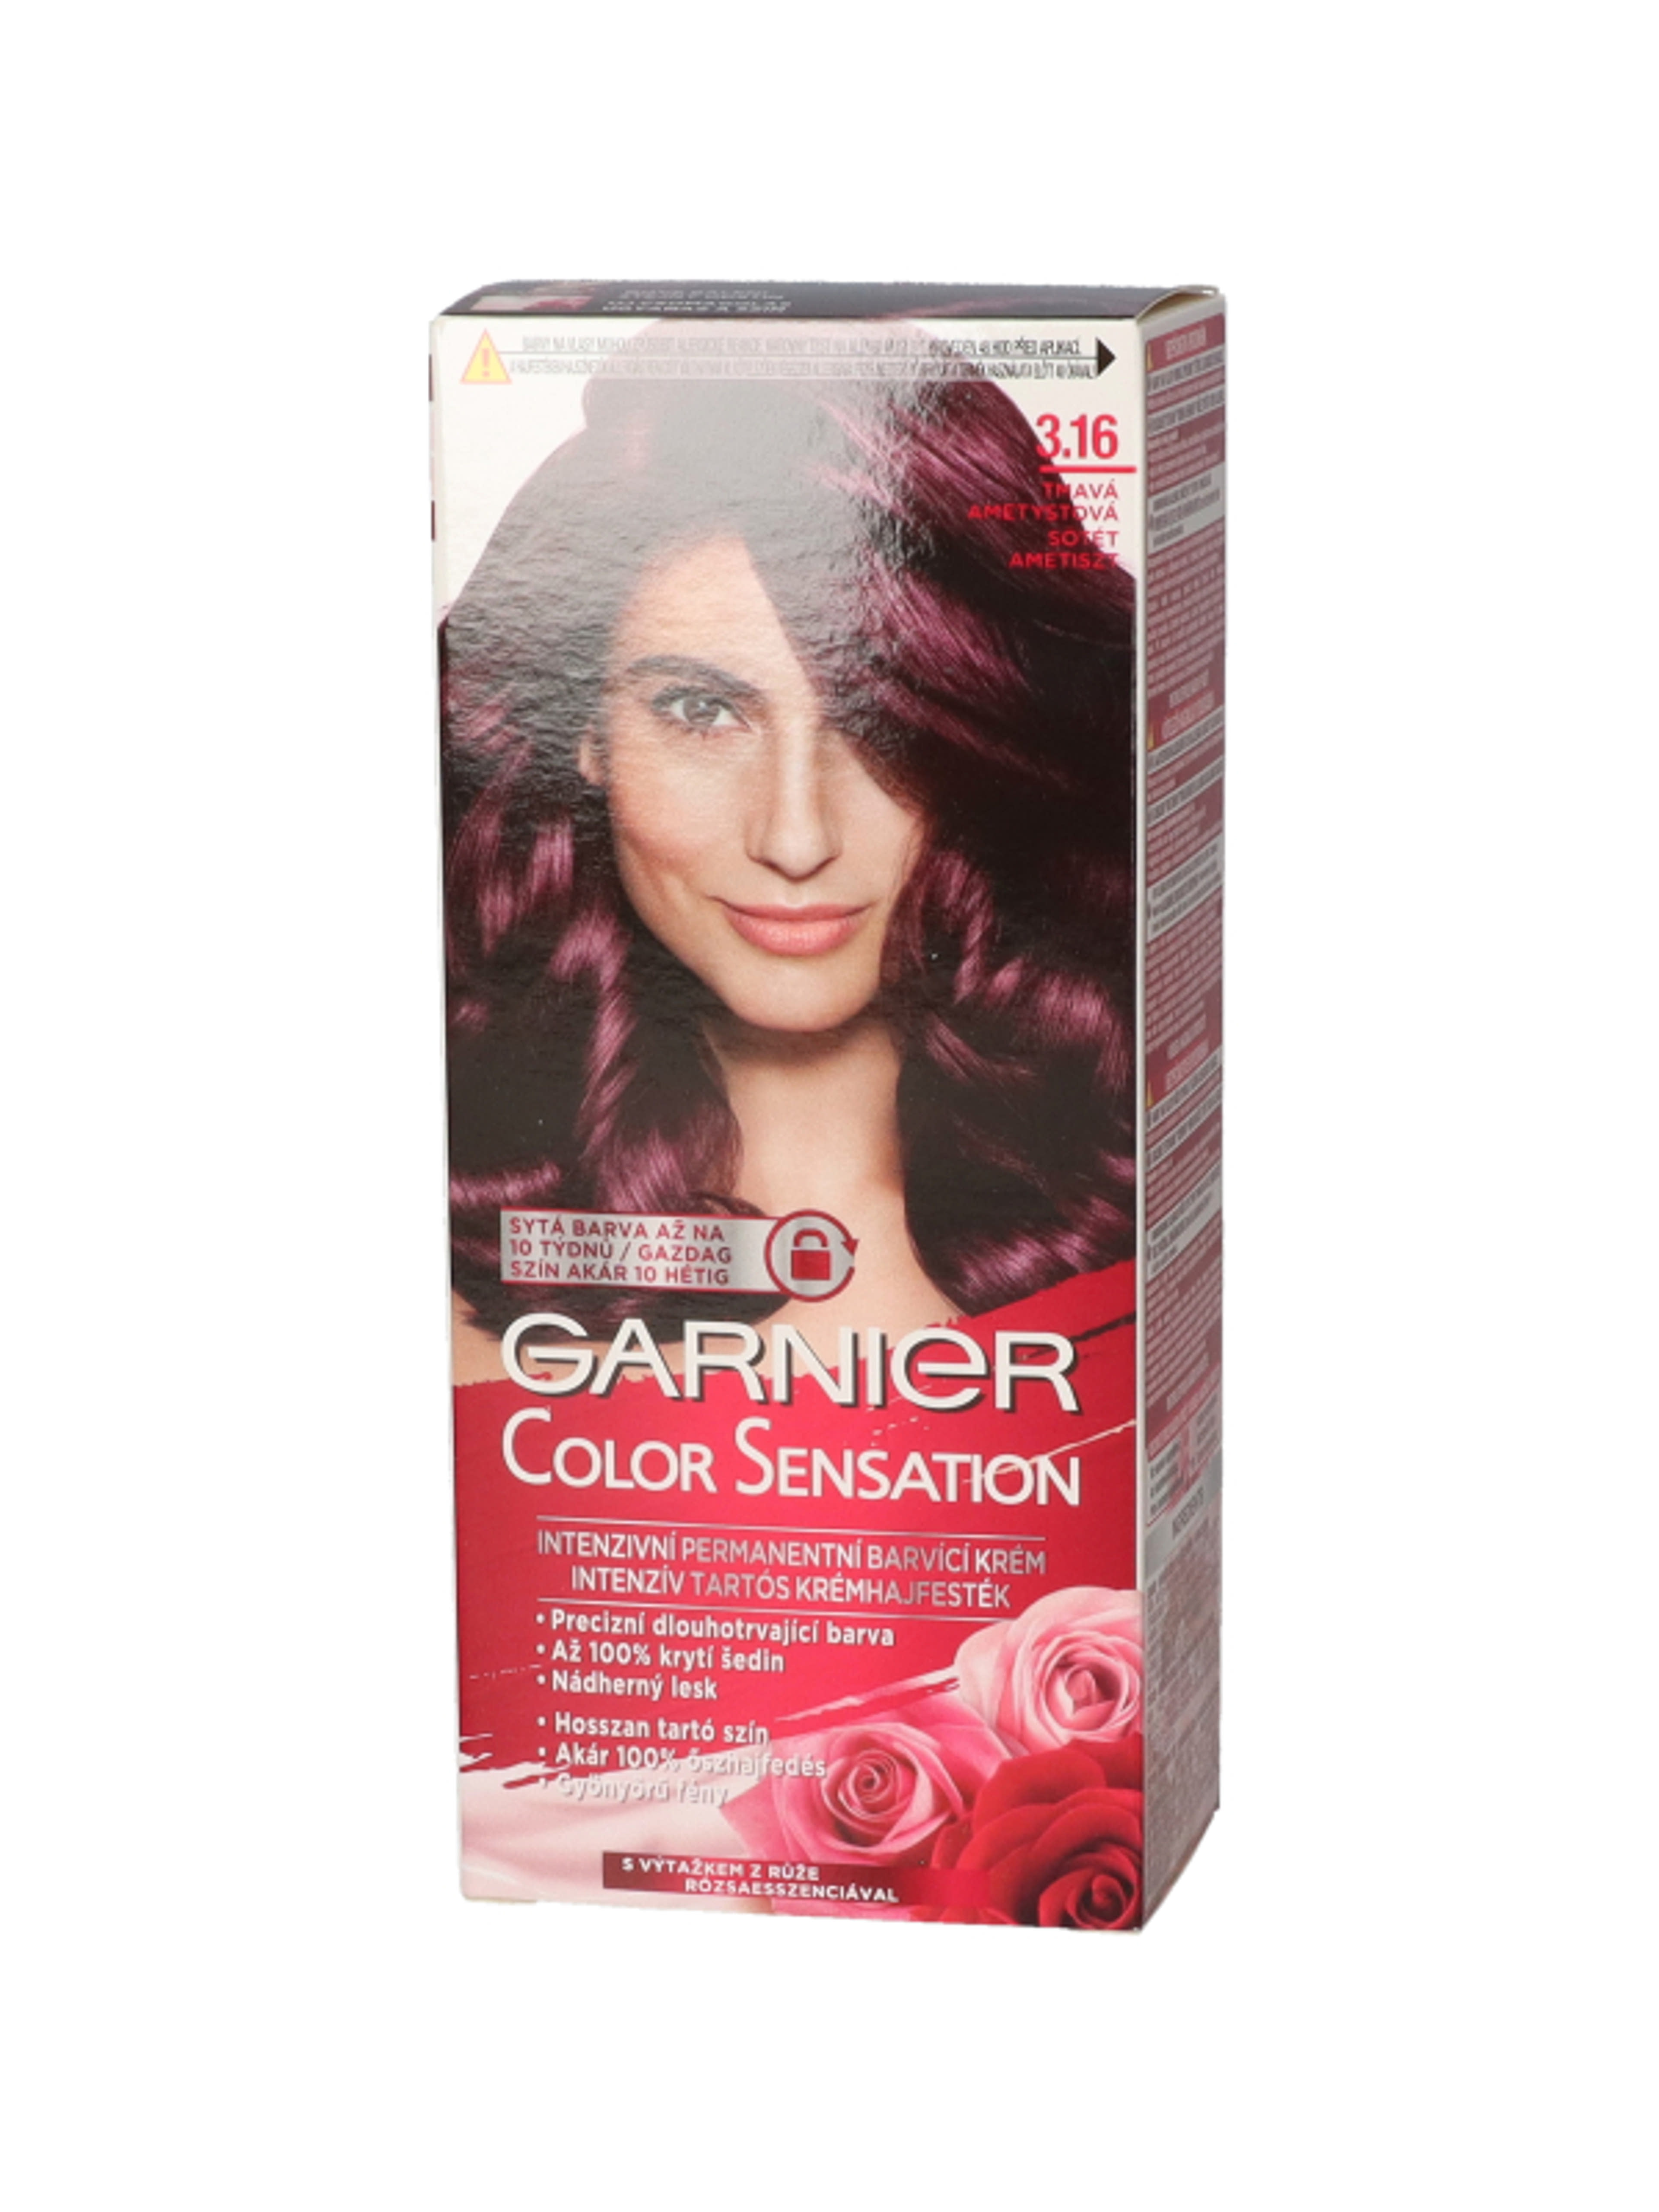 Garnier Color Sensation hajfesték 3.16 Sötét ametiszt - 1 db-3